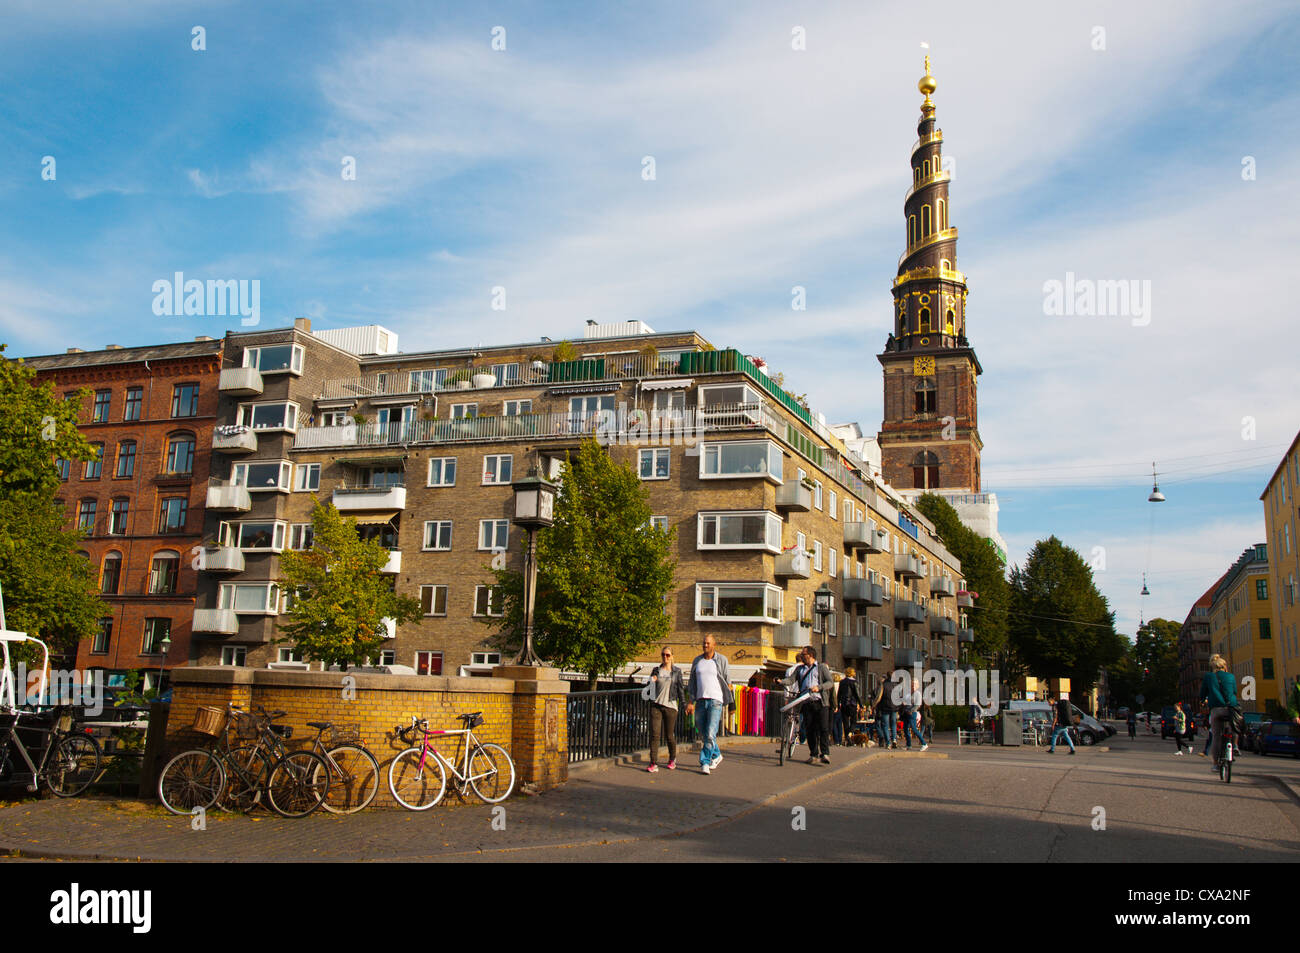 Christianshavn district Copenhagen Denmark Europe Stock Photo